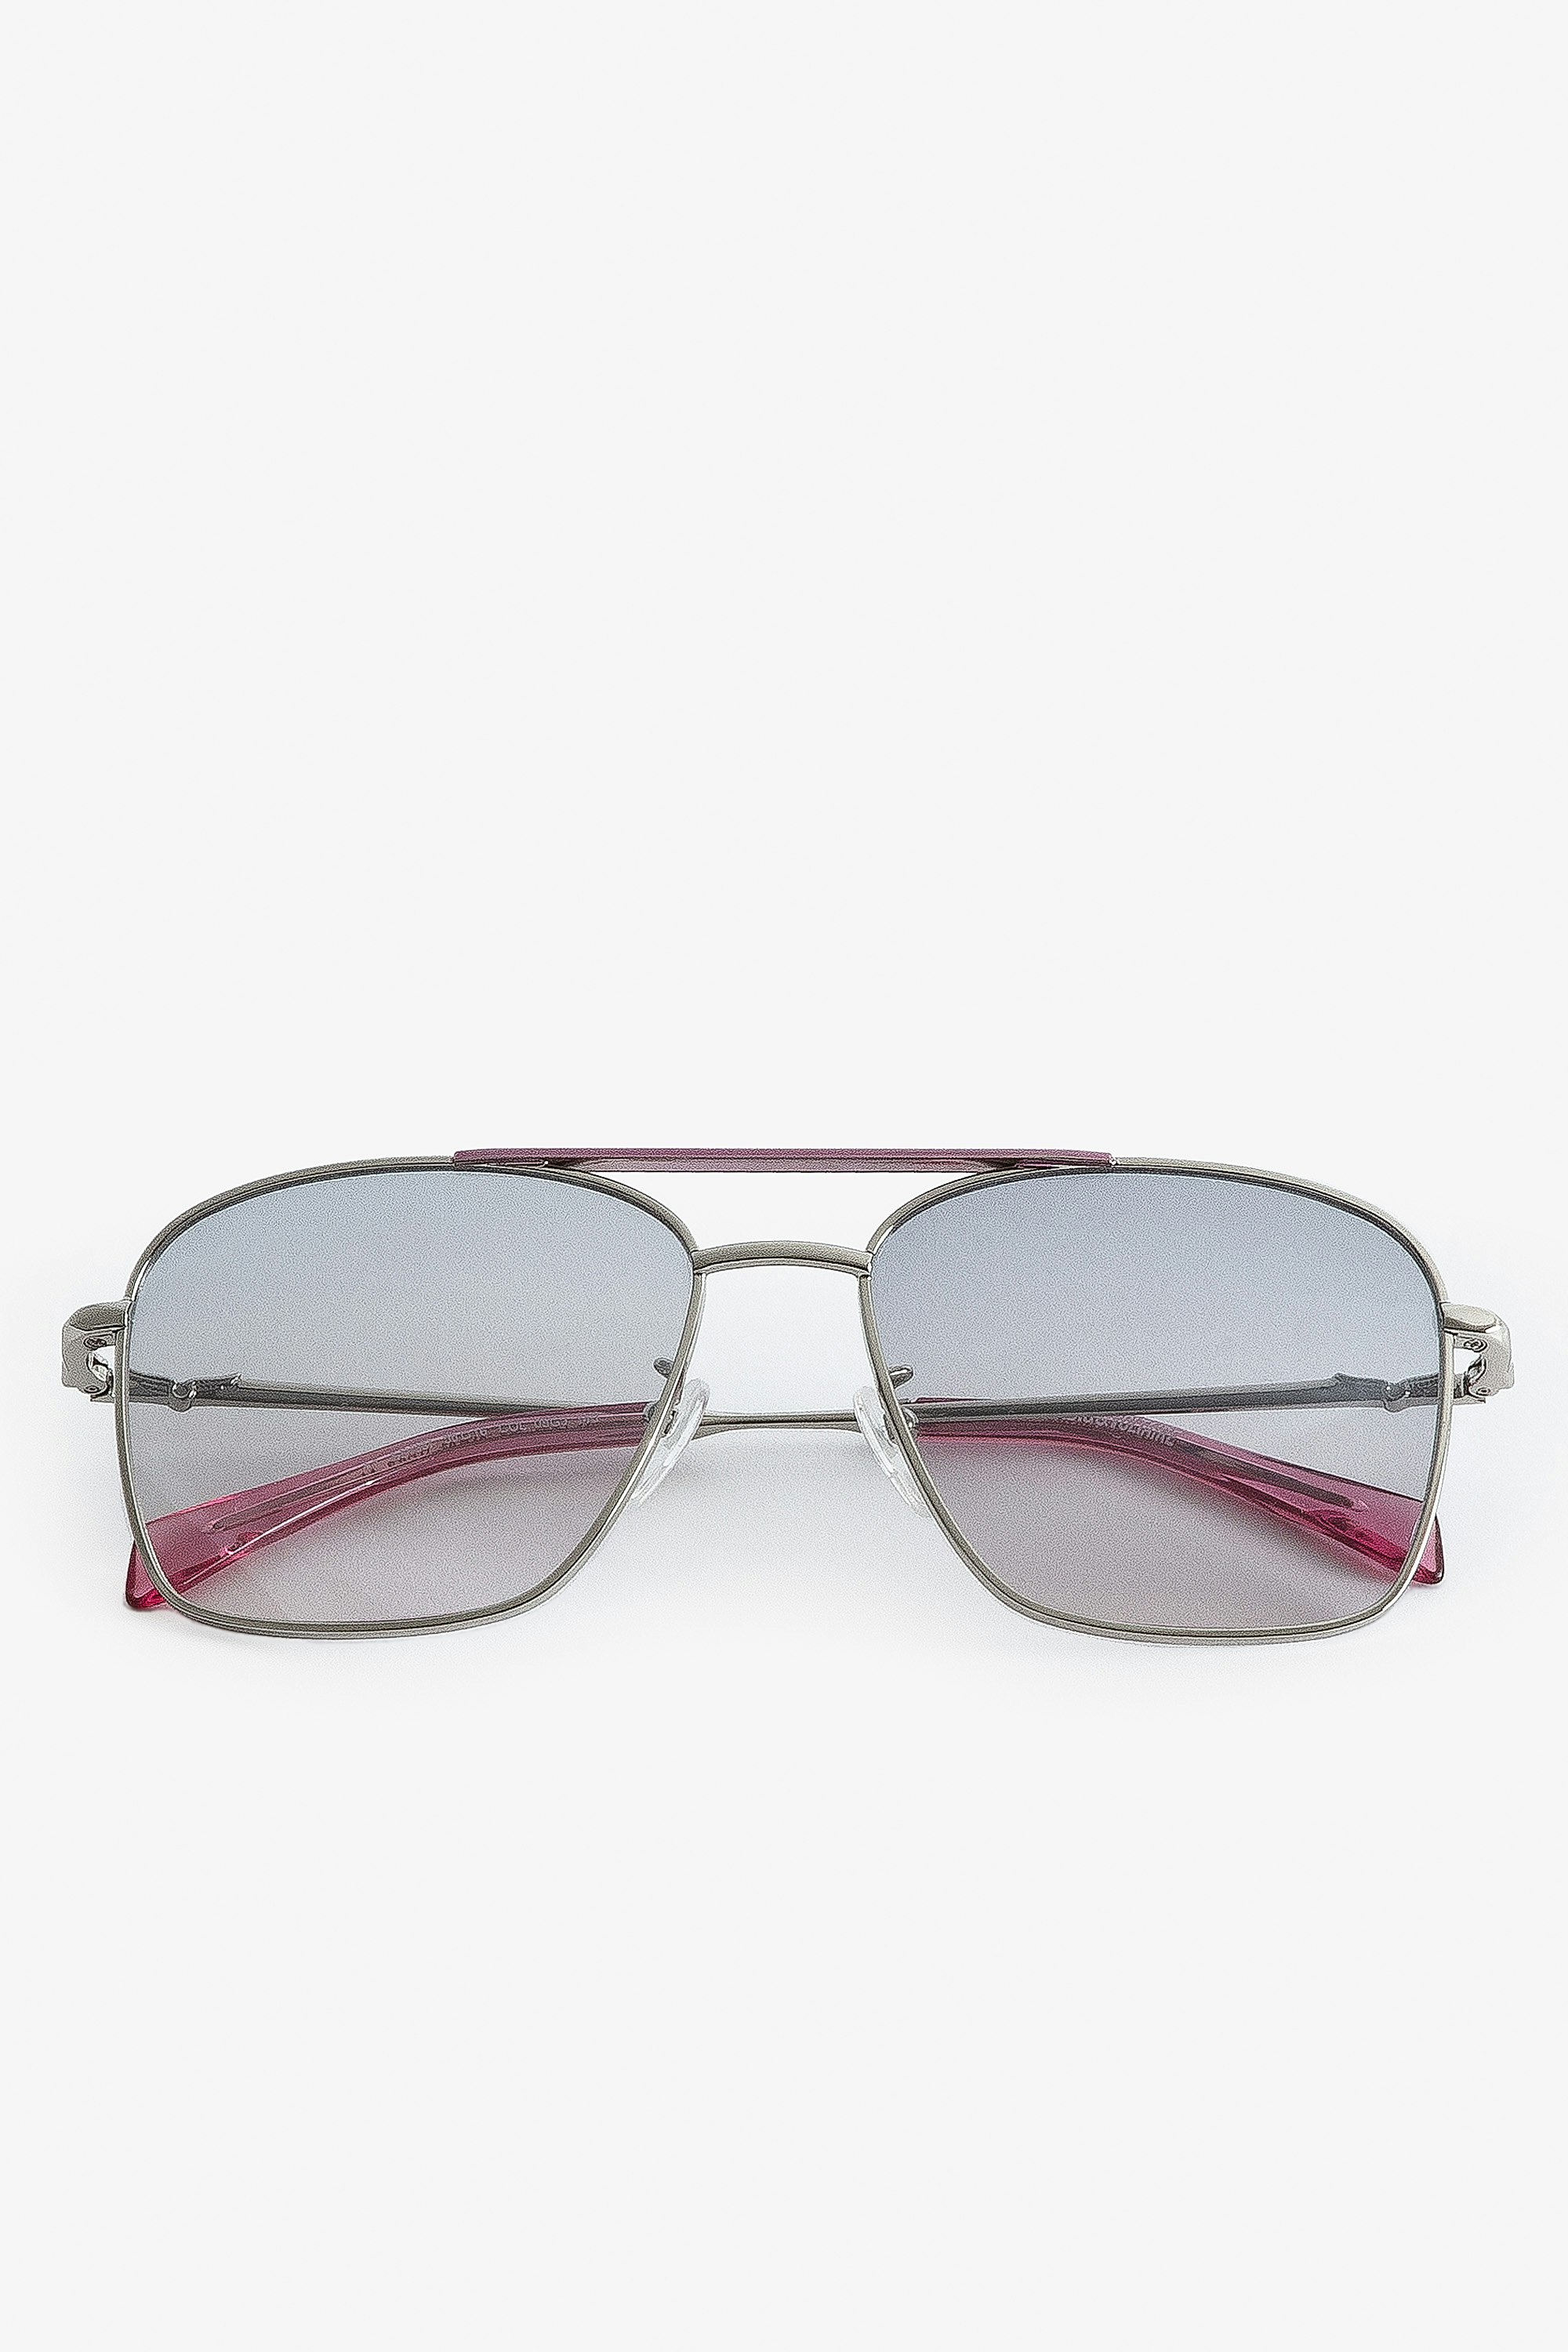 Sonnenbrille Wings Aviator - Unisex-Pilotensonnenbrille aus rosafarbenem Metall mit Rauchgläsern.